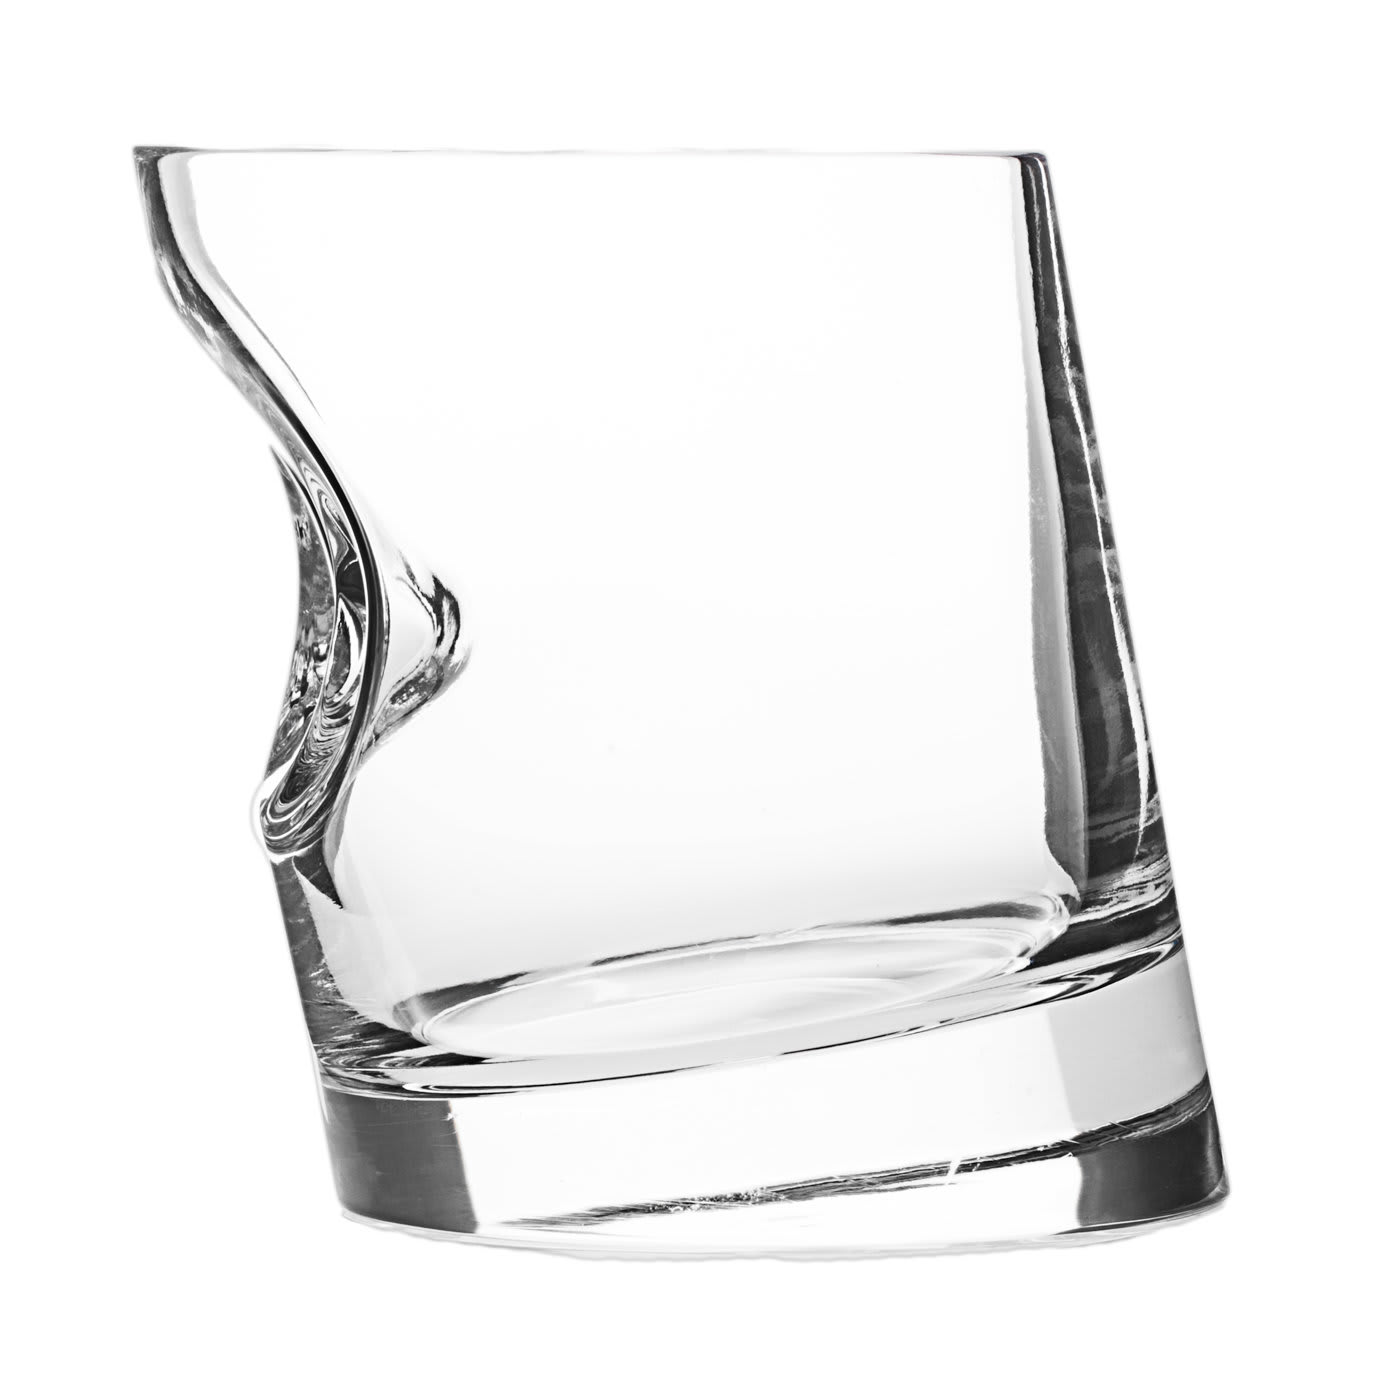 Canora Grey Nirwat 12 - Piece 1oz. Glass Flute Glassware Set